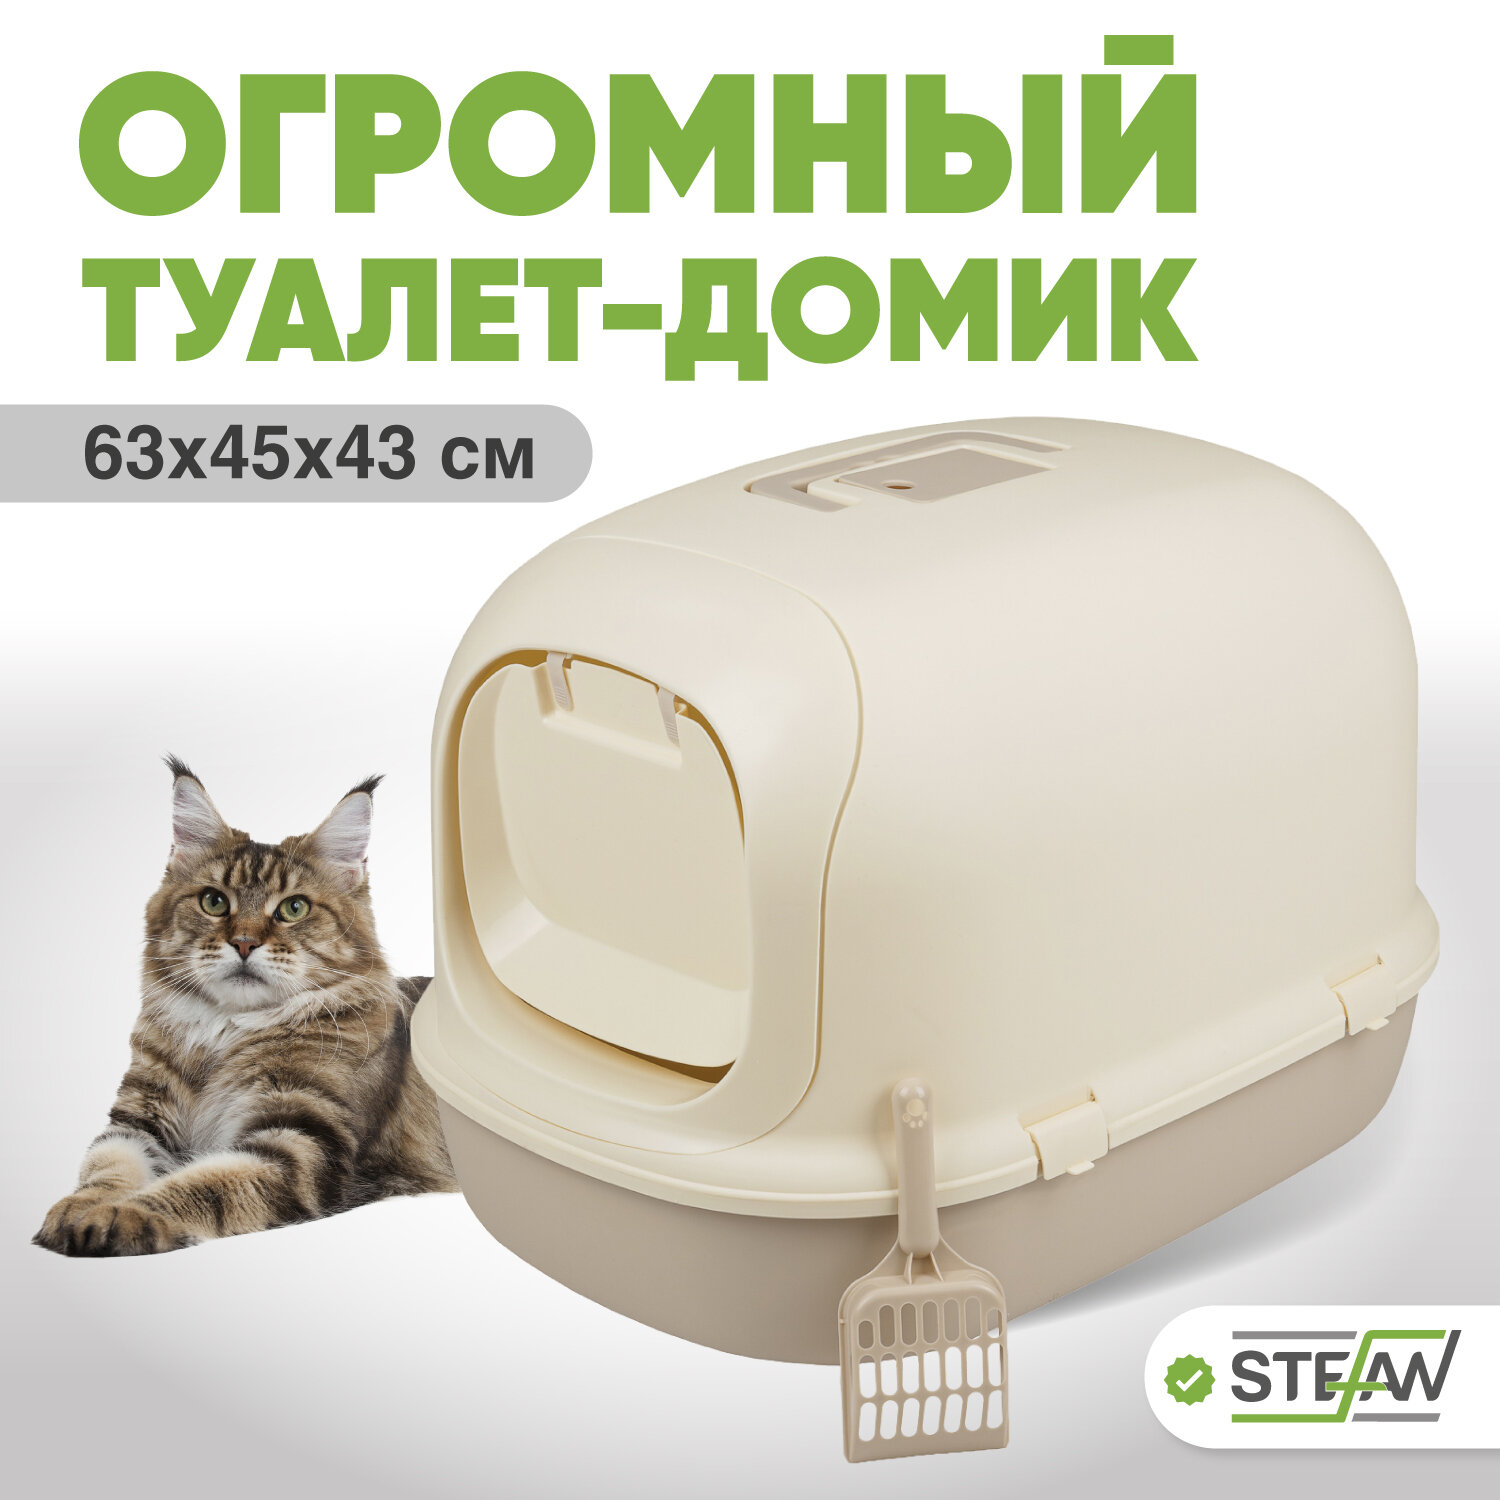 Закрытый лоток домик для кошек STEFAN, большой (XL), 63х41х43, светло-коричневый, BP1903N